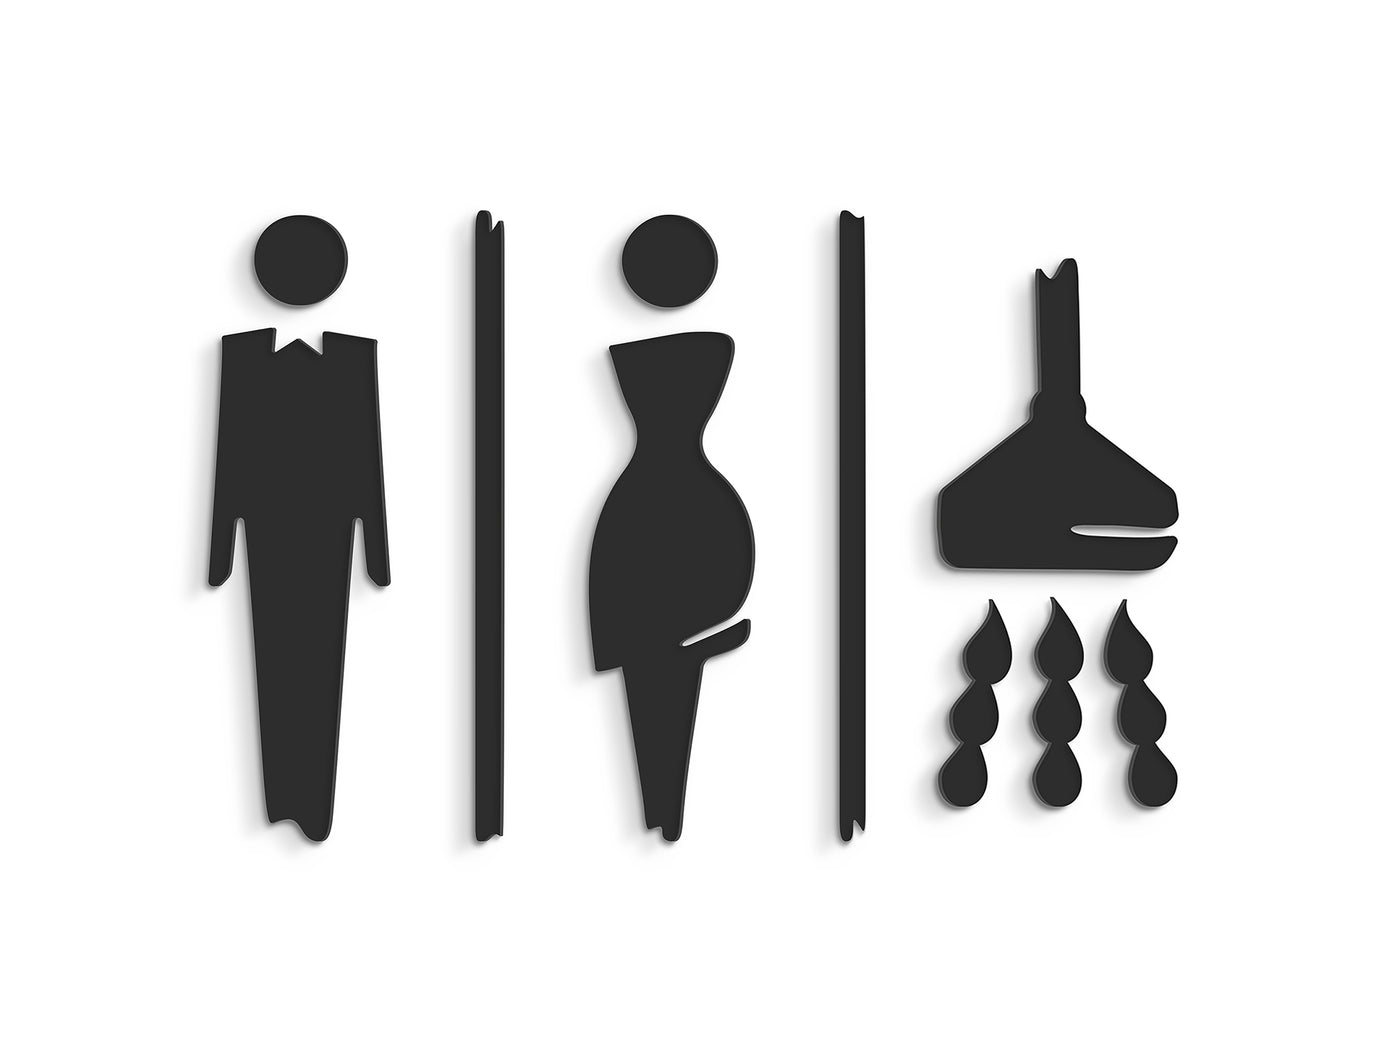 Elegant, Juego 3x - Símbolos adhesivos Aseos en relieve, Señales de Baño -  Man, Woman, Shower restroom